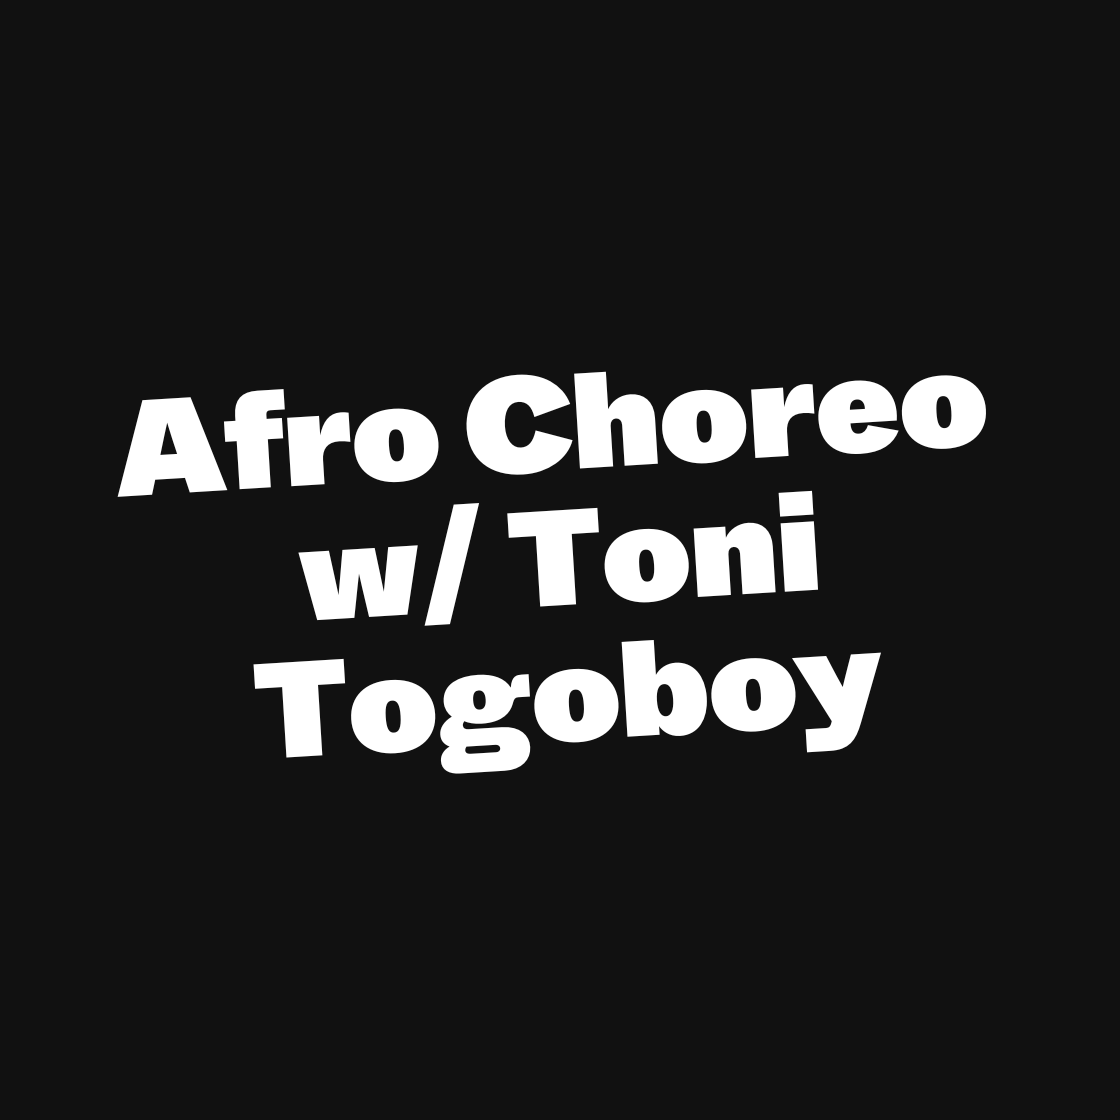 Afro Choreo w/ Toni Togoboy